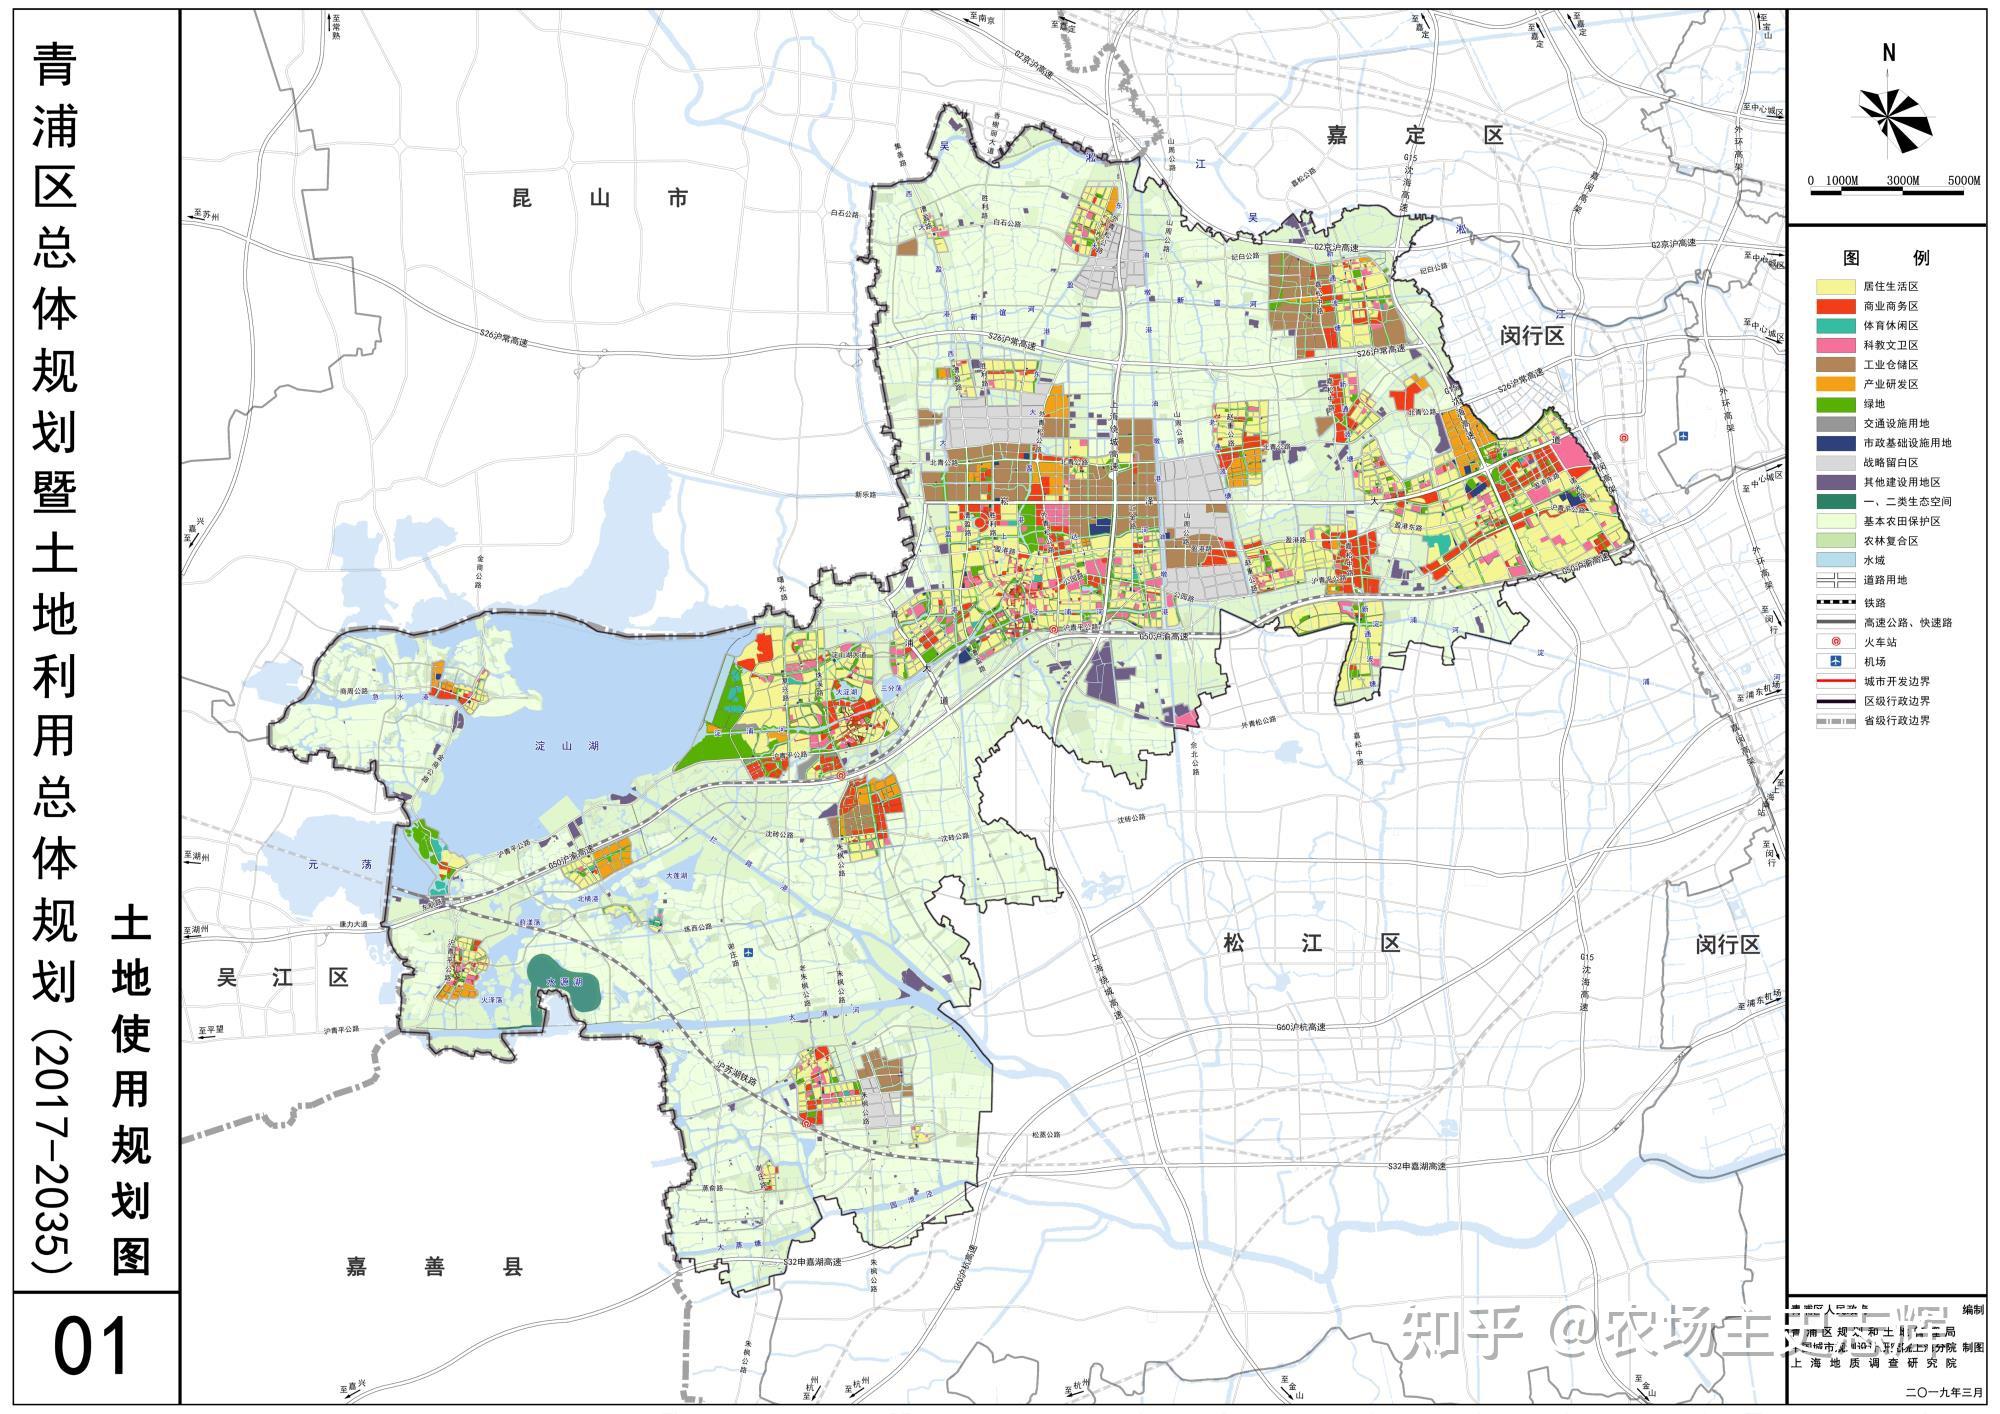 以上为发展和规划大框架,下图为青浦区土地使用规划图金泽镇要发挥